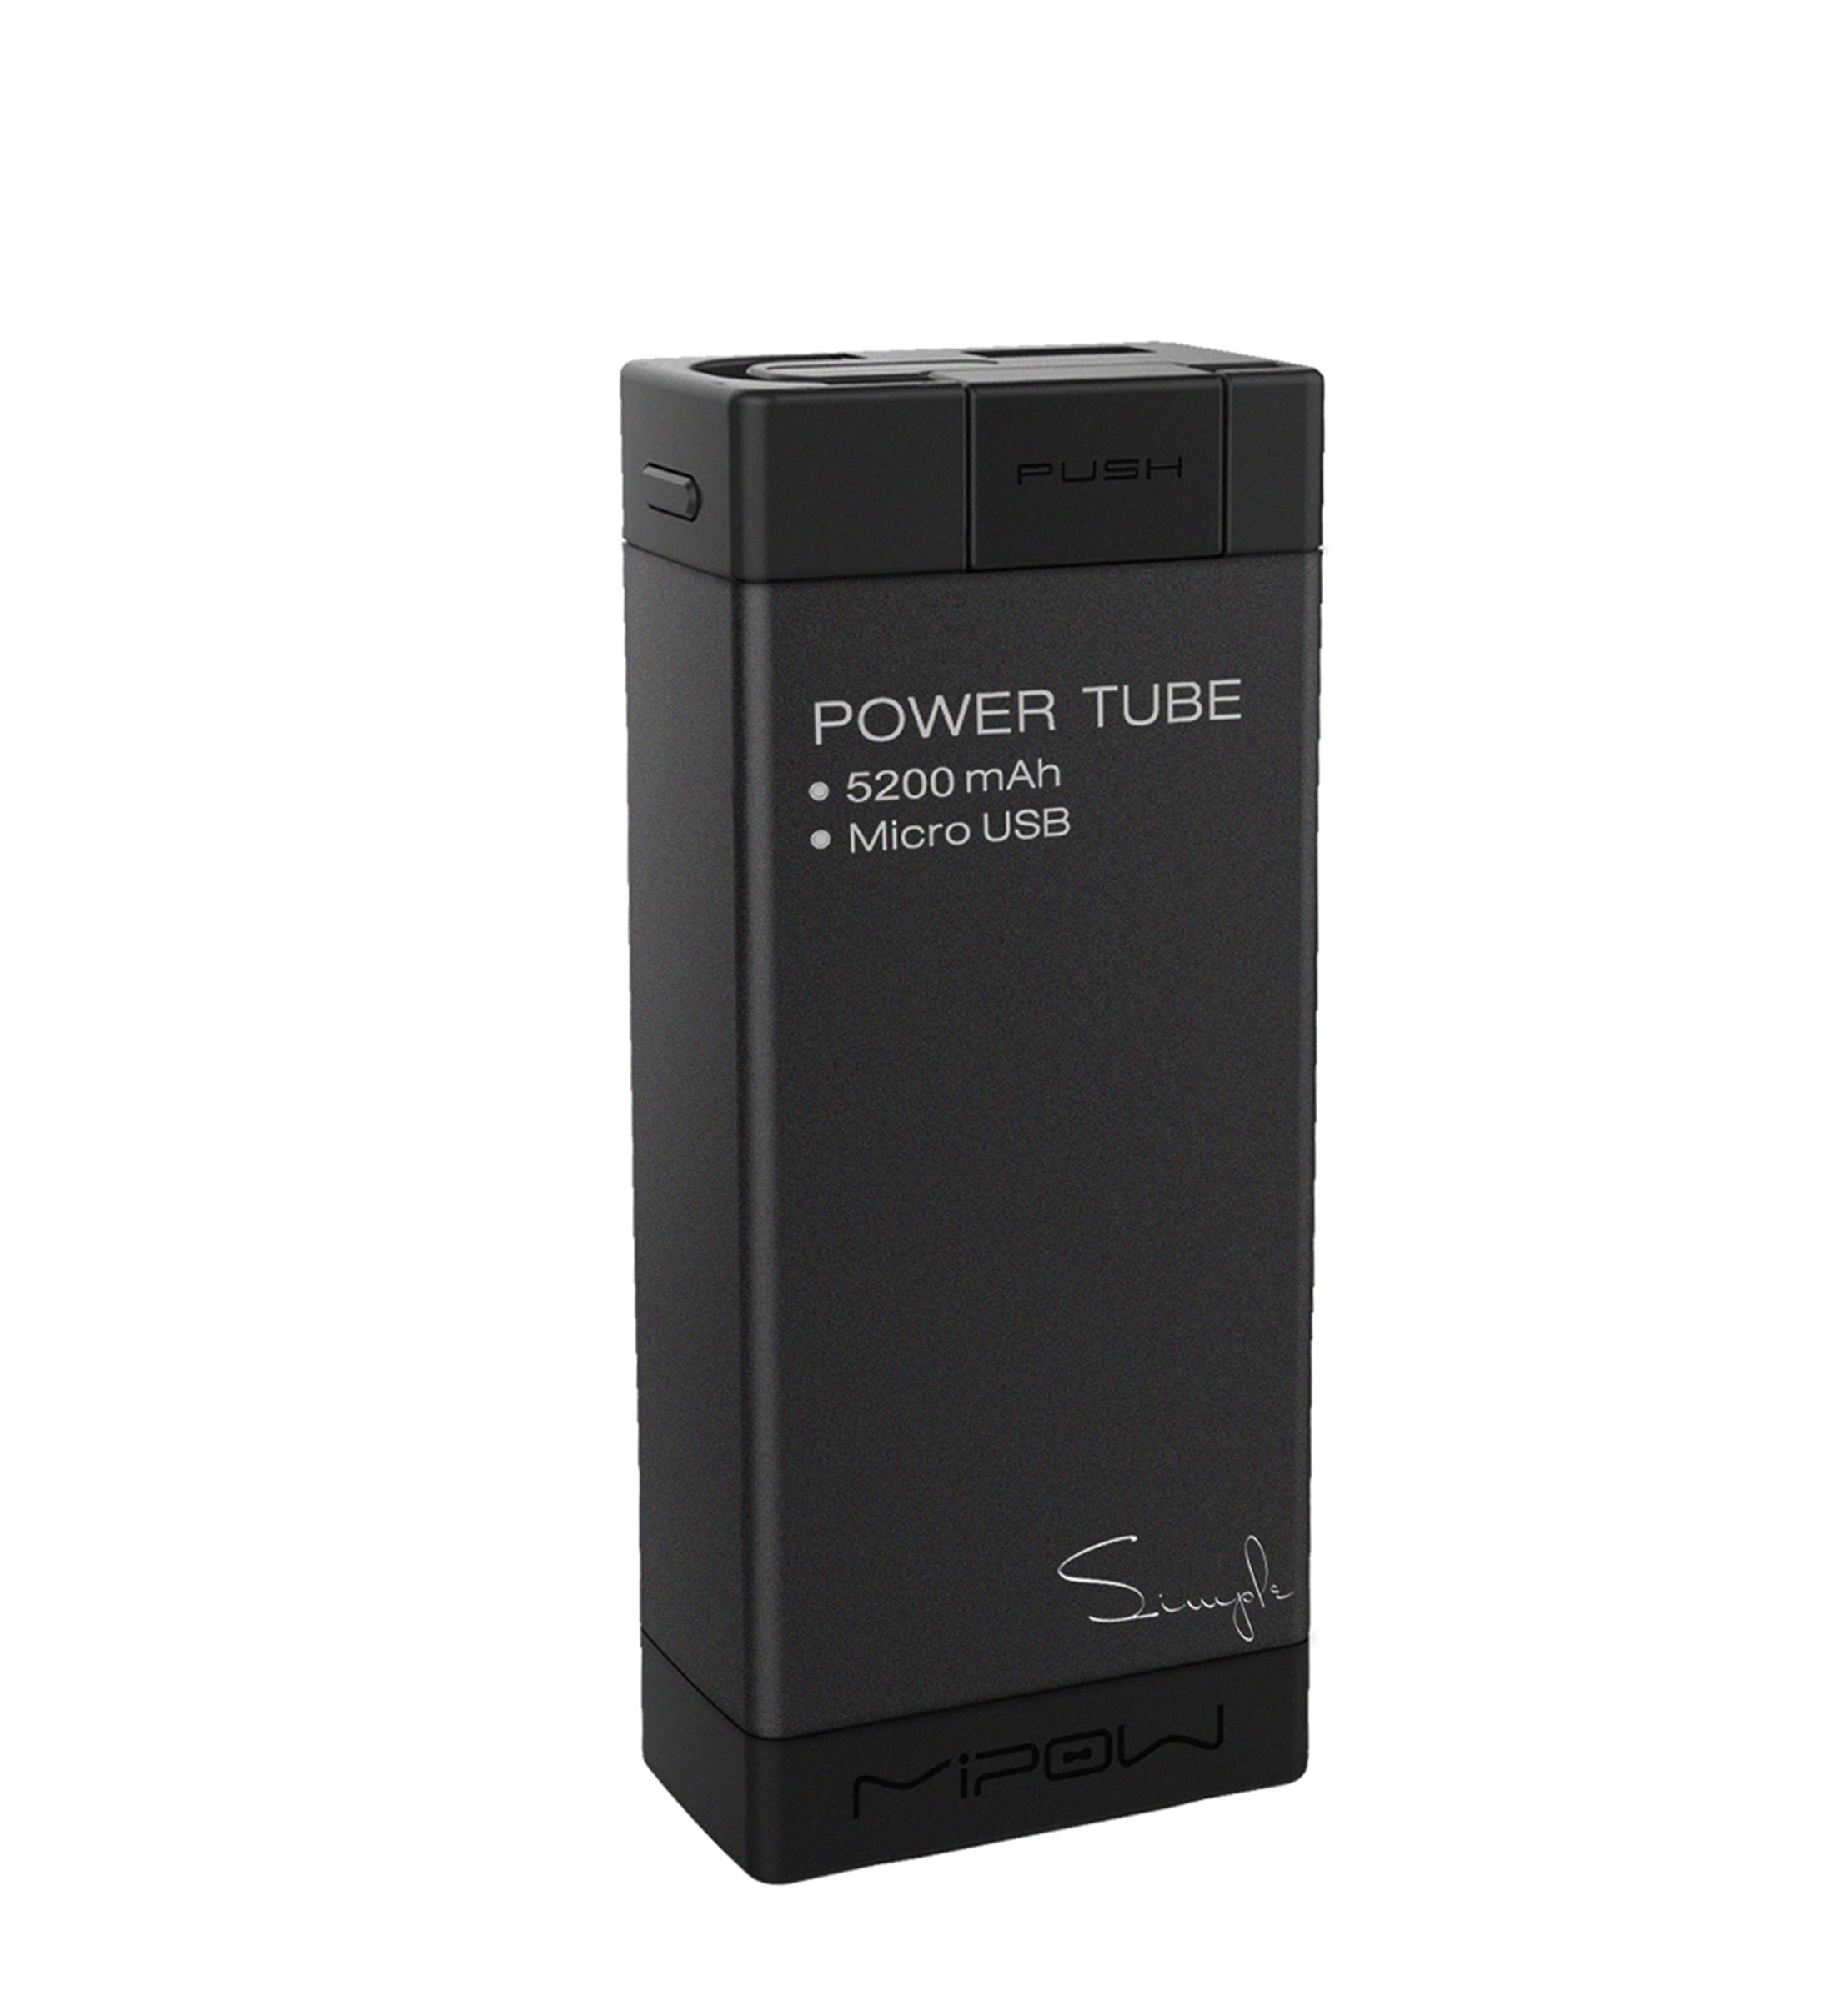 Mipow PowerTube, la batteria da borsetta per stare in carica con stile